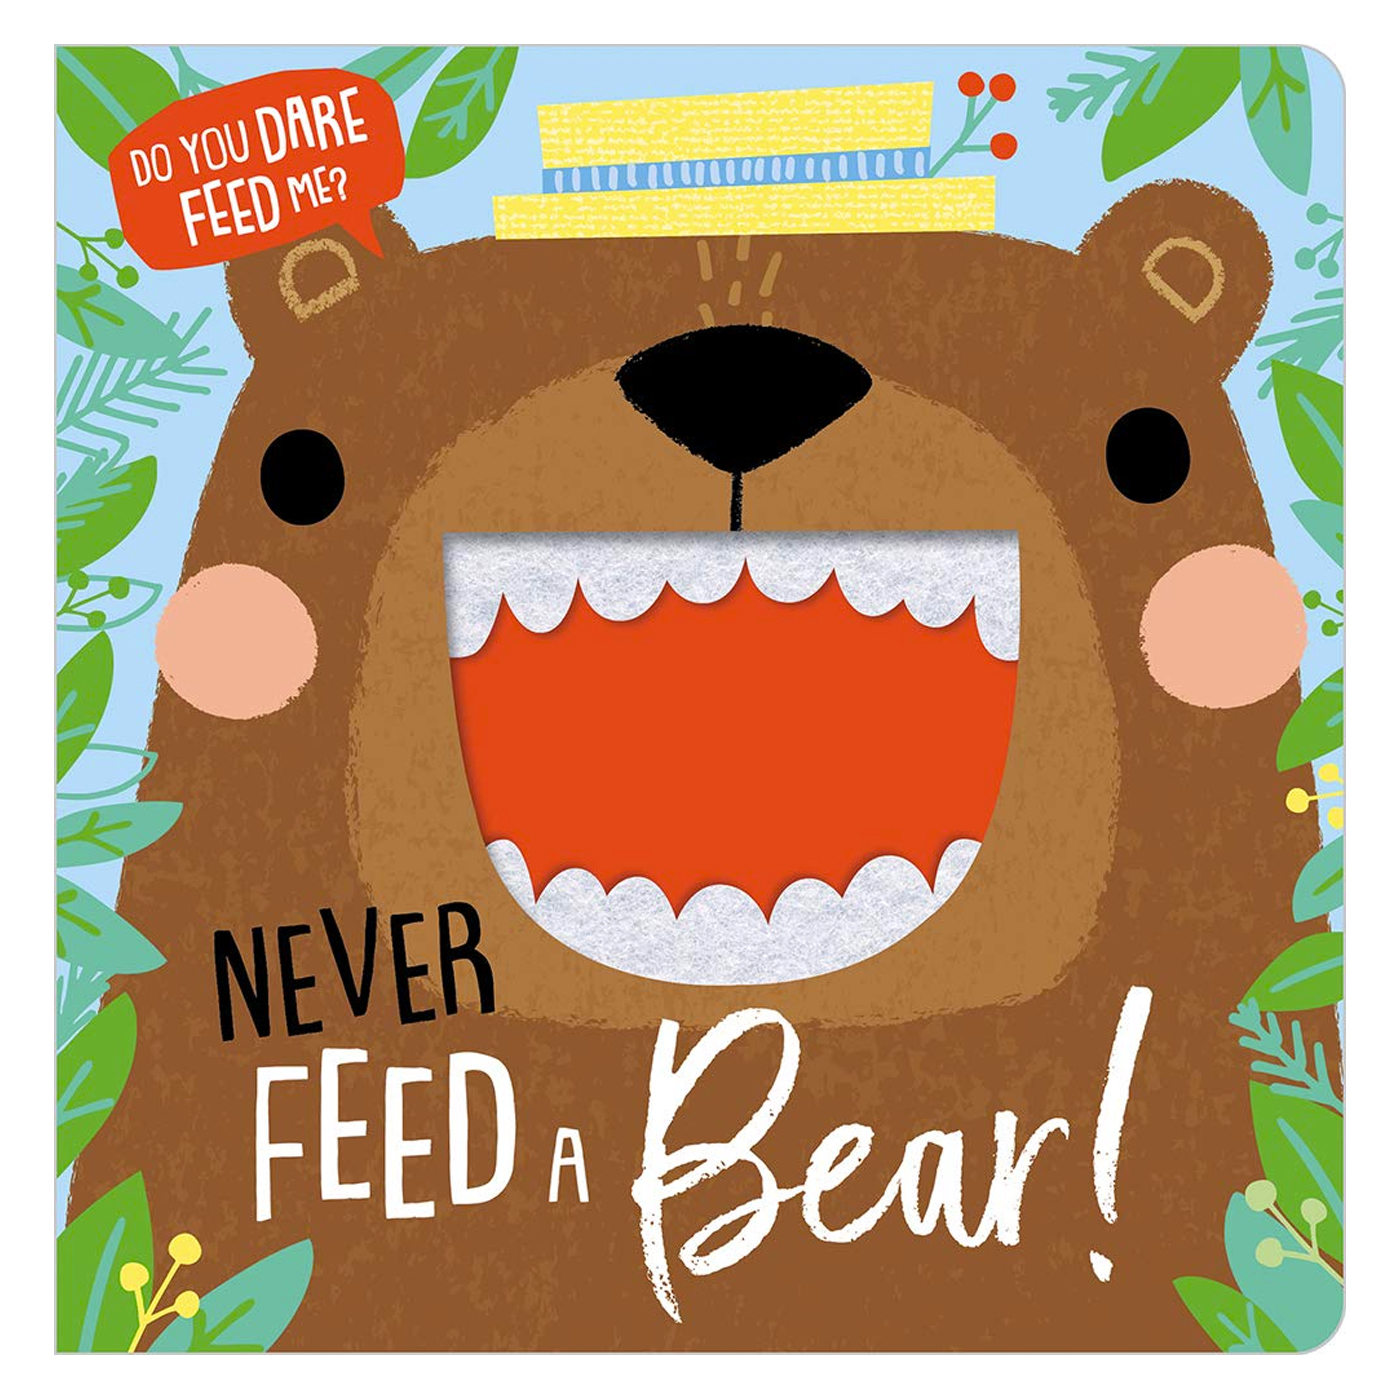  Never Feed A Bear!